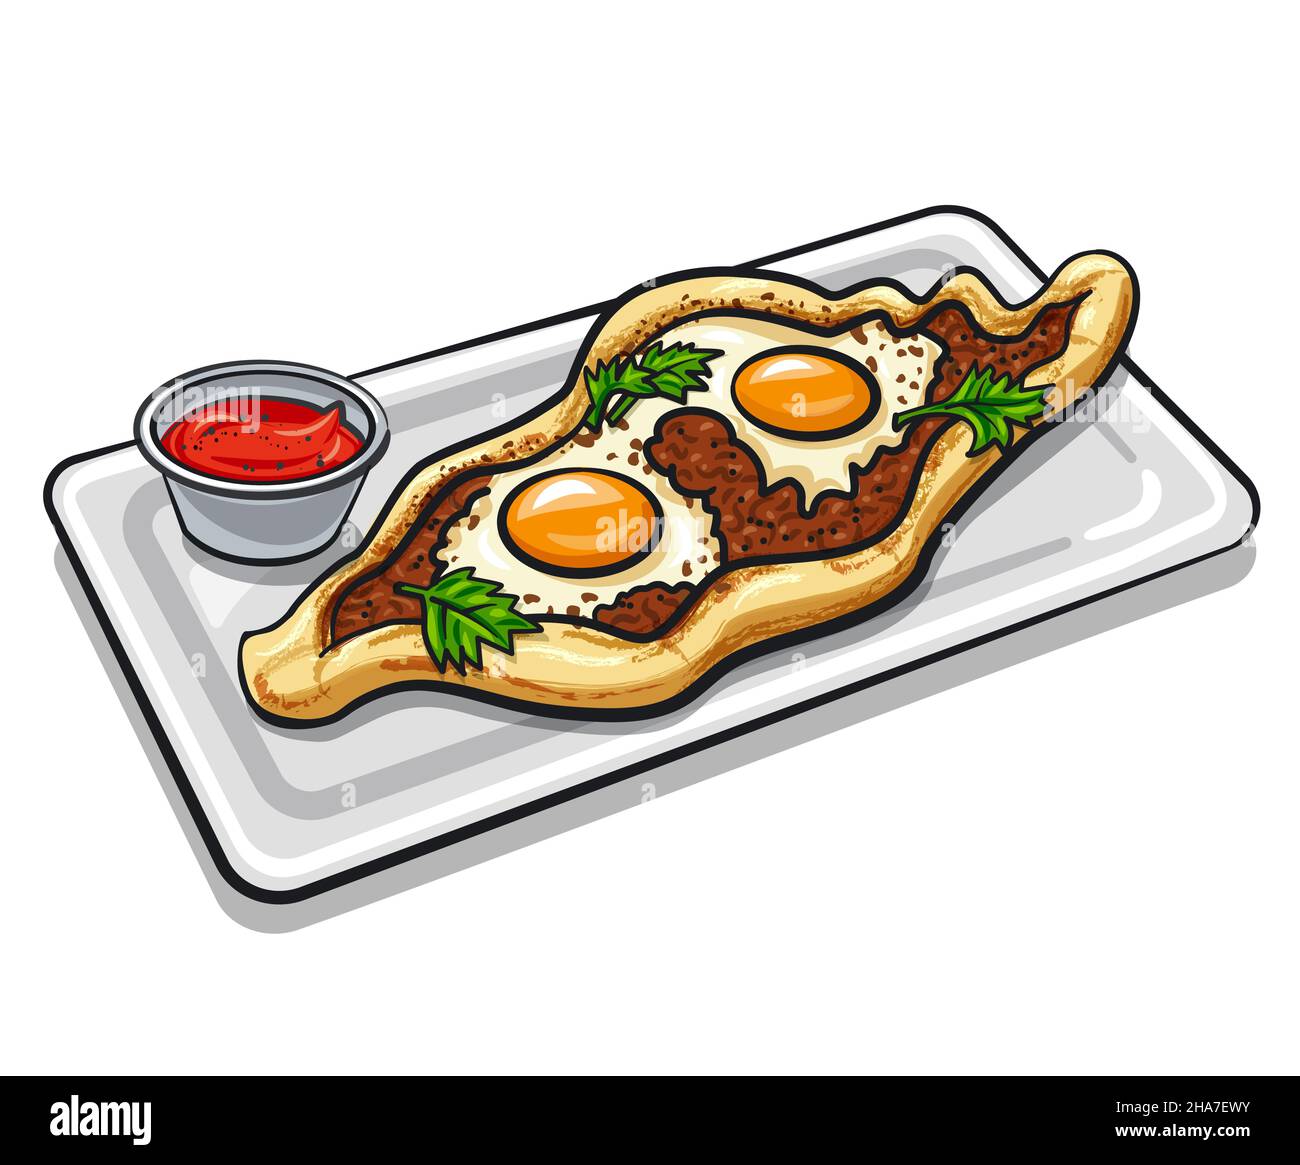 pan piatto turco al pide sormontato con uova e minсe al forno Illustrazione Vettoriale